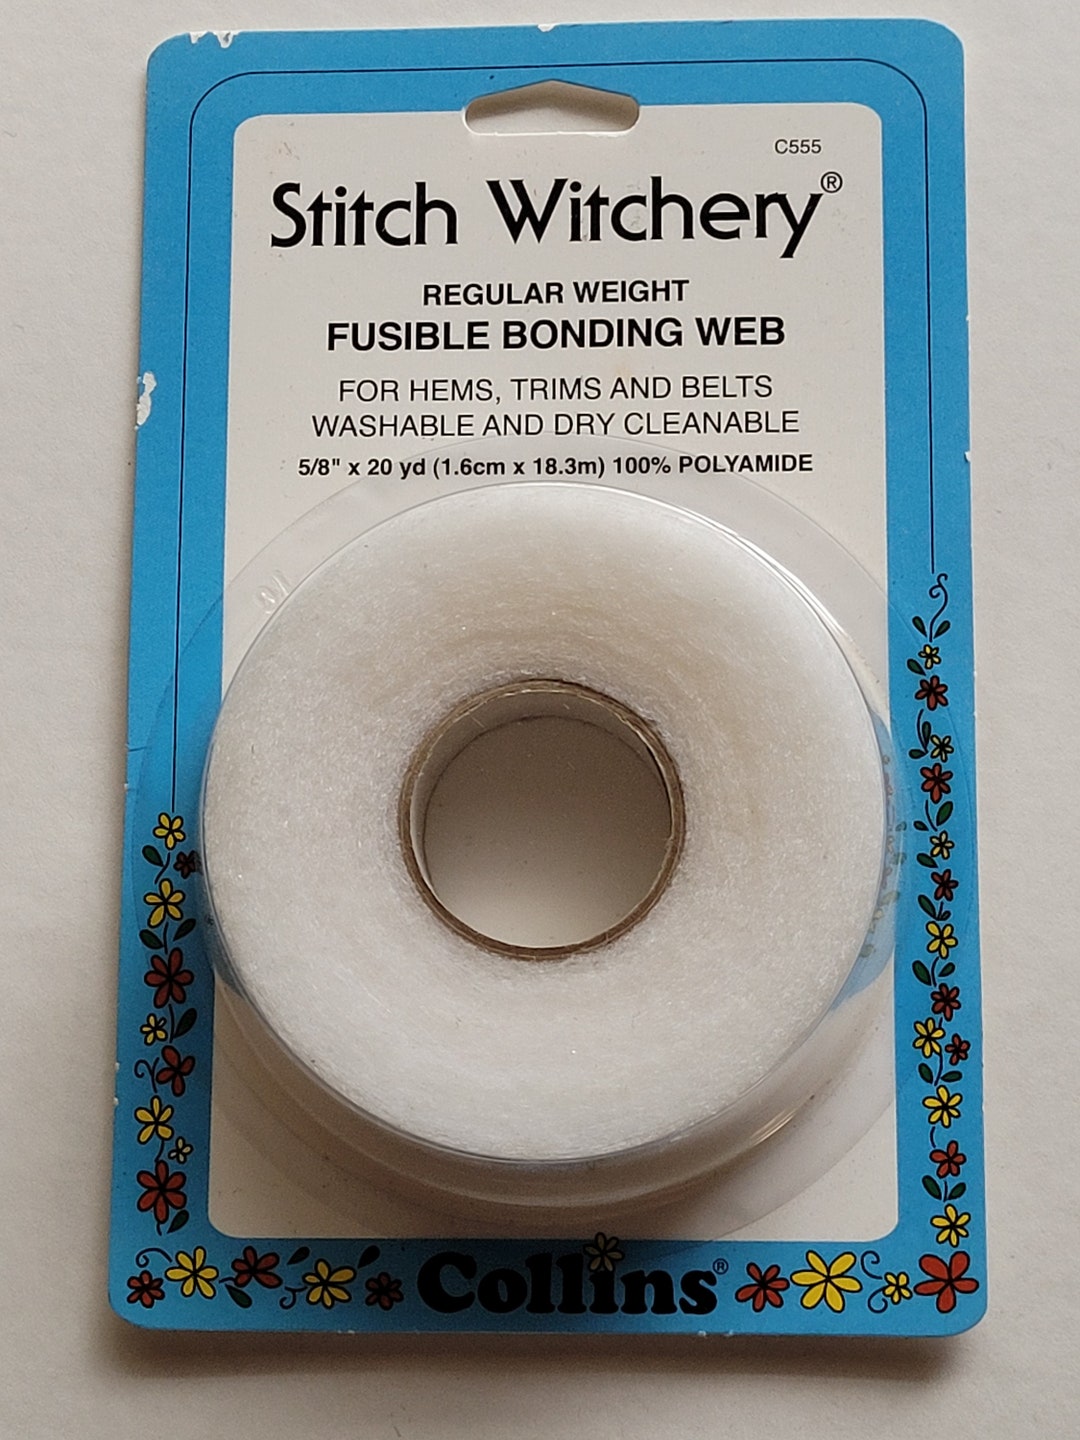 Collinsnow Prym-dritz Stitch Witchery-5/8 X 20 Yards. Made in the USA 